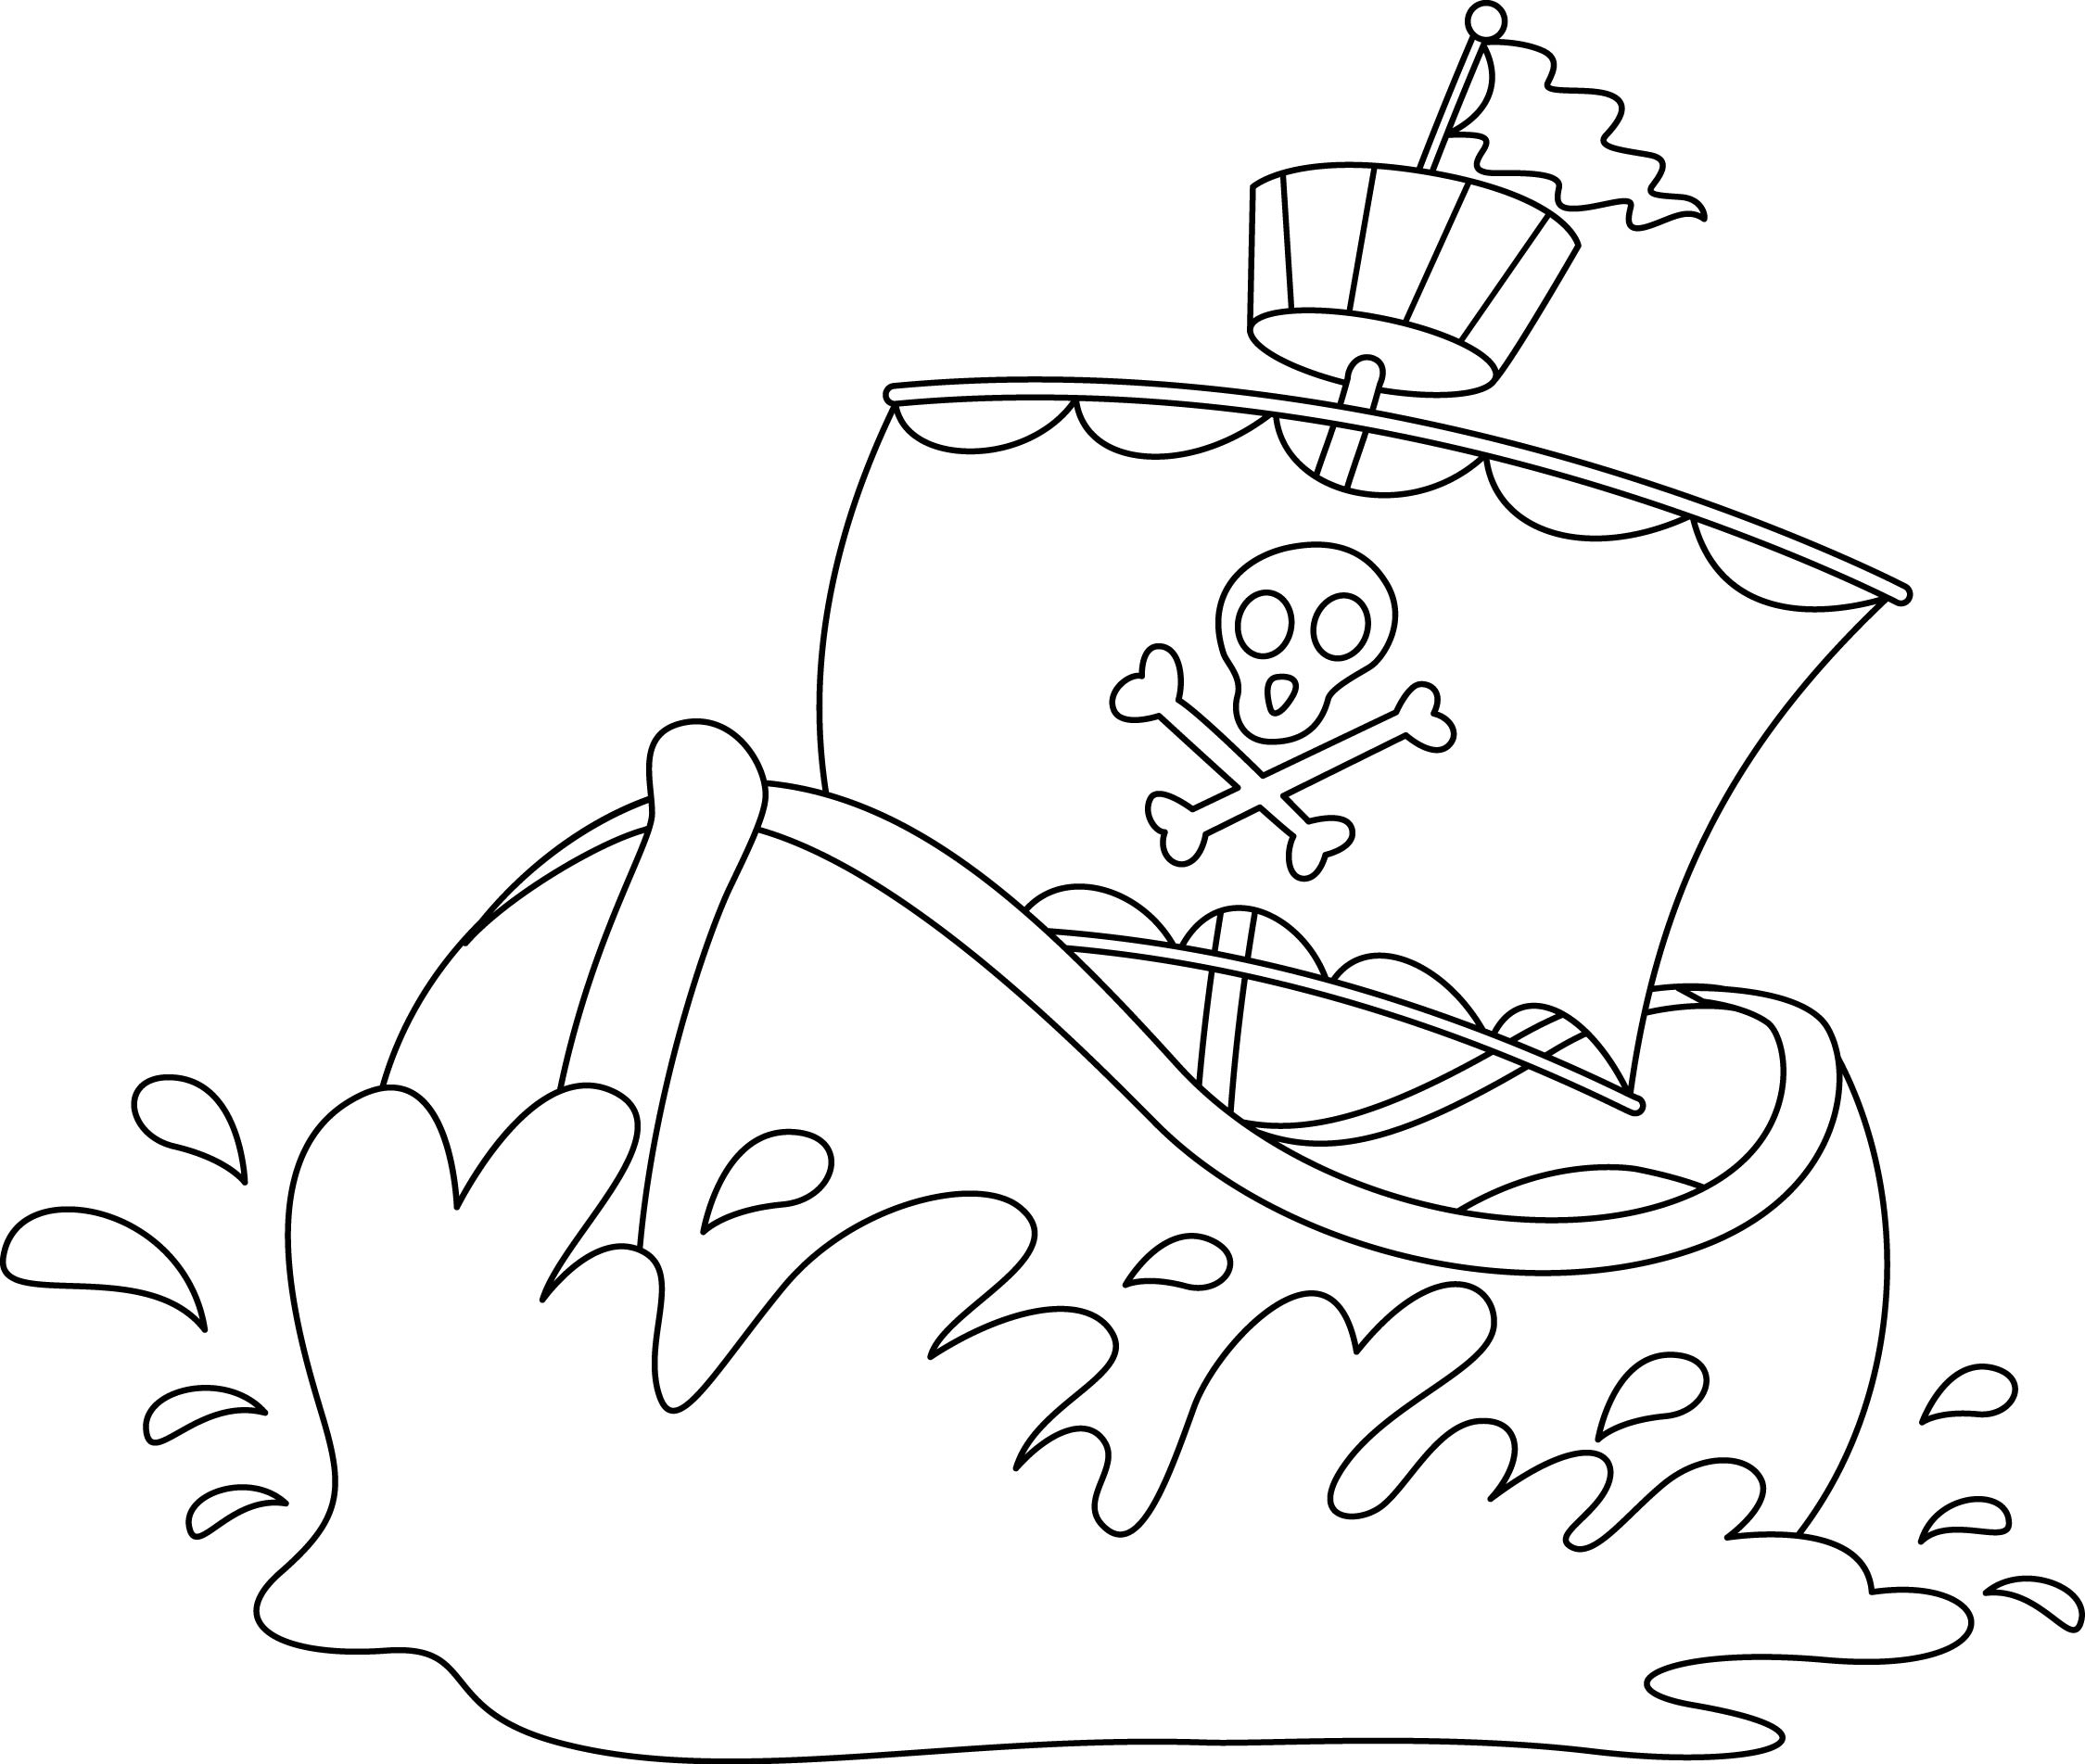 Раскраска корабль с пиратским флагом плывет по волнам формата А4 в высоком качестве